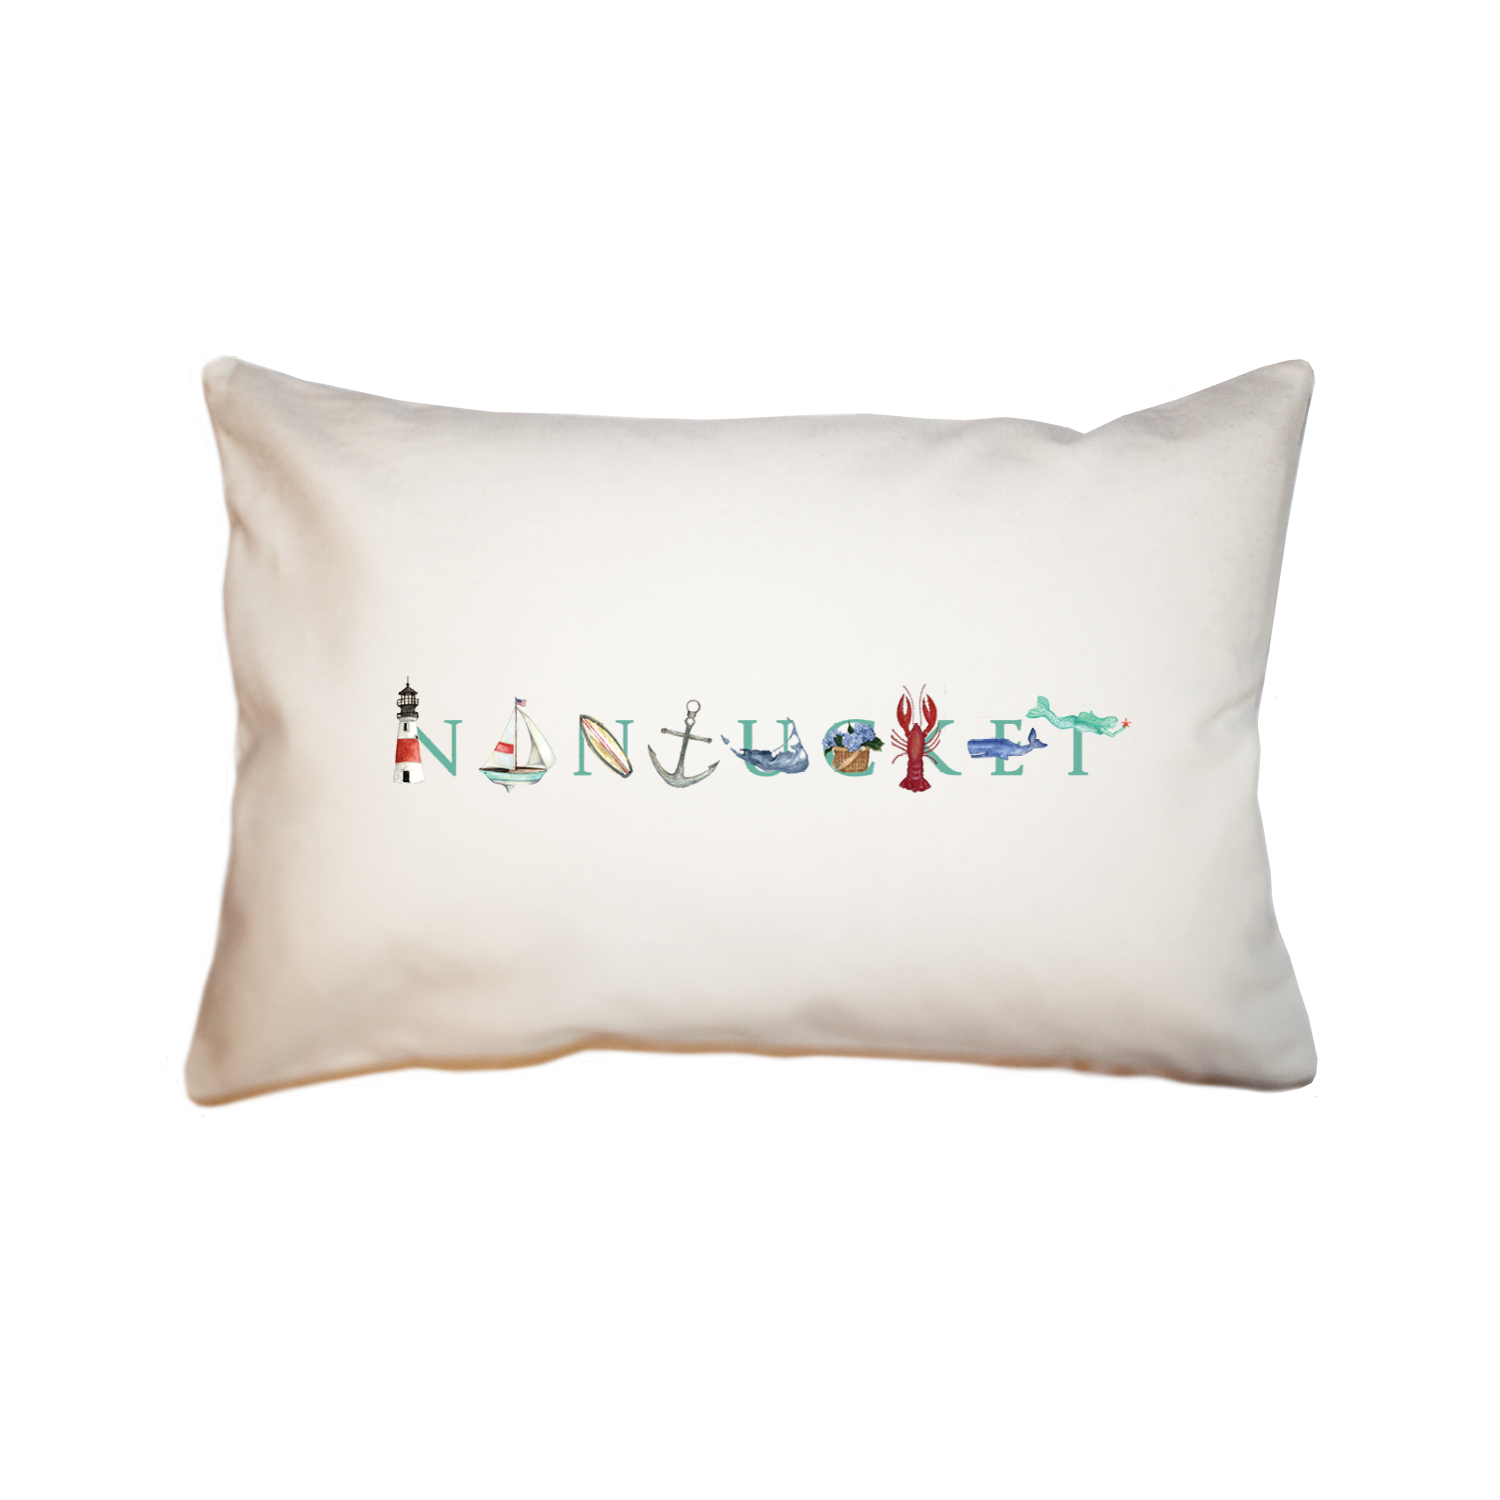 Nantucket large rectangle pillow